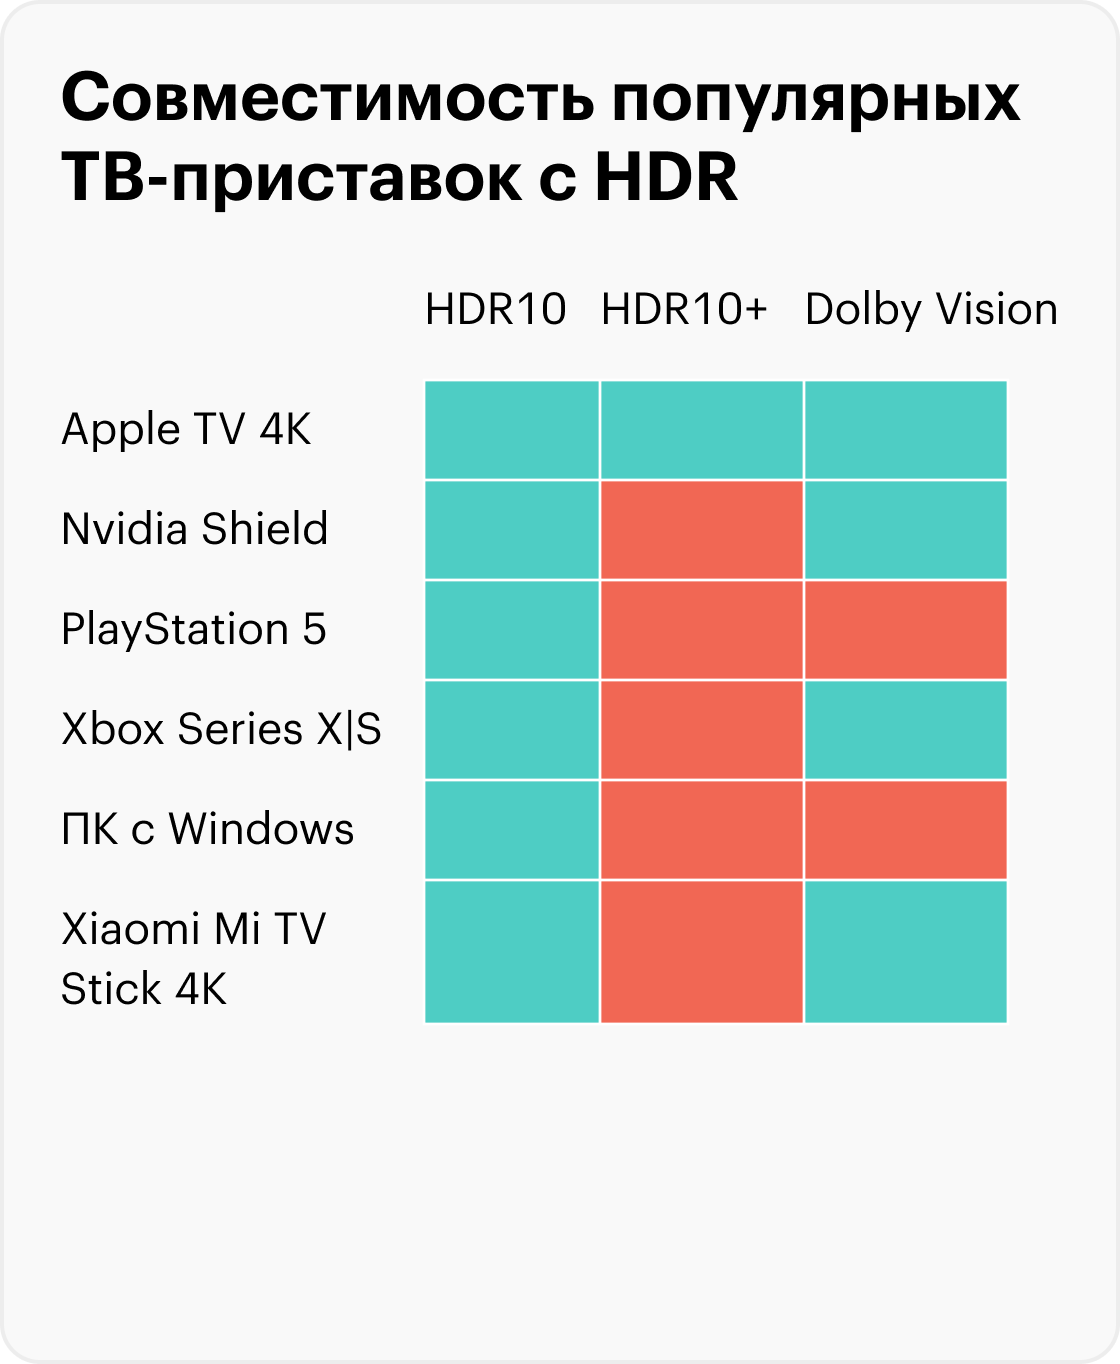 Большинство игр на Xbox работают в HDR10